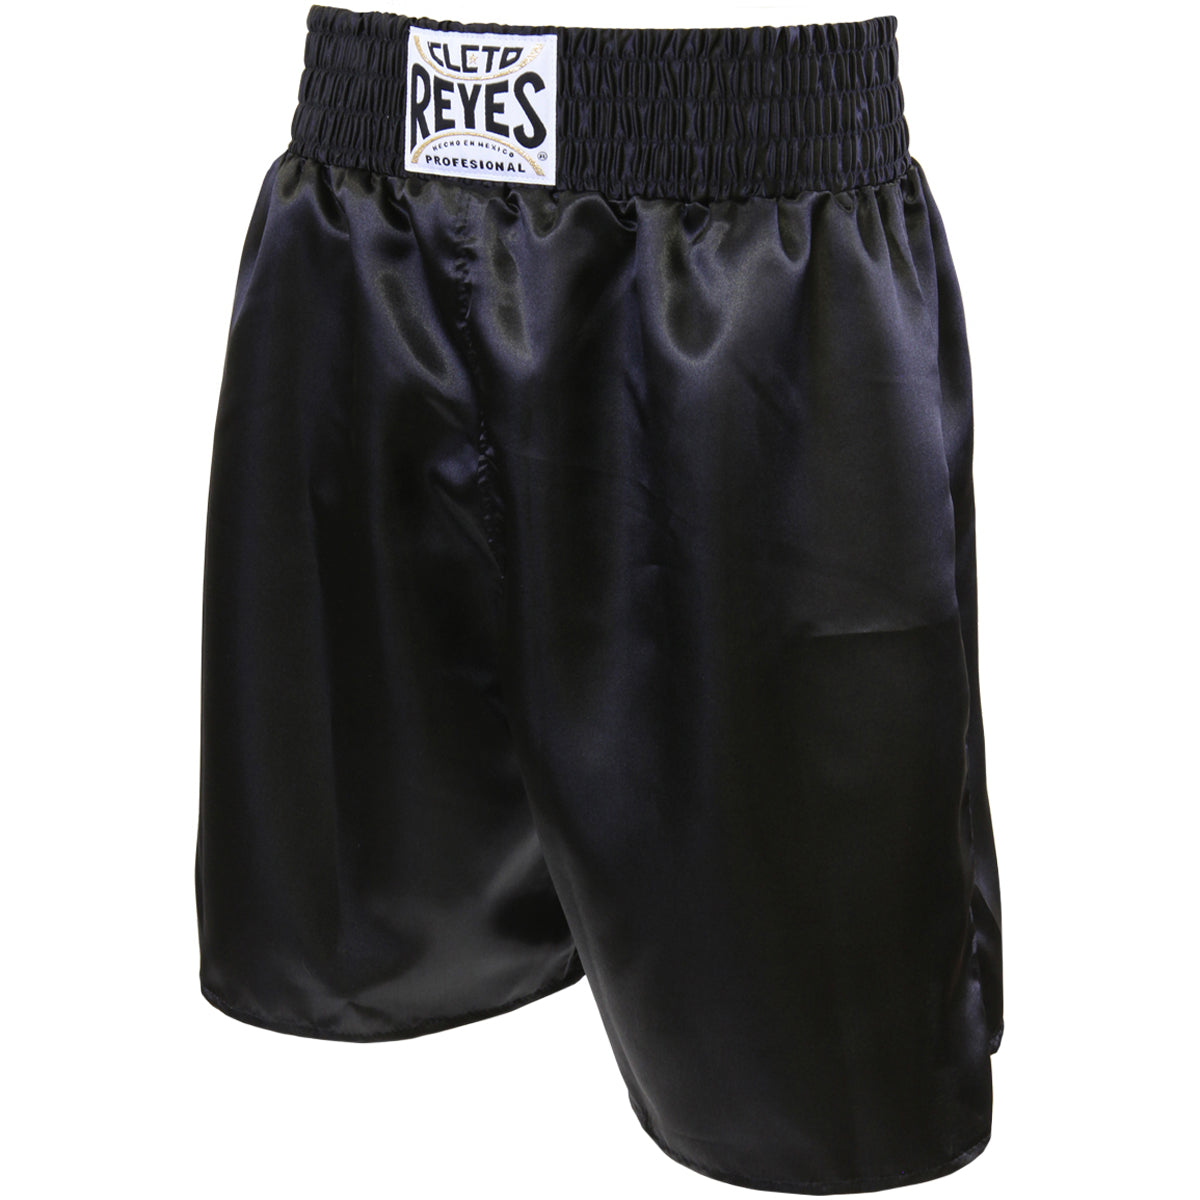 Cleto Reyes Satin Classic Boxing Trunks - XL (44") - Black Cleto Reyes